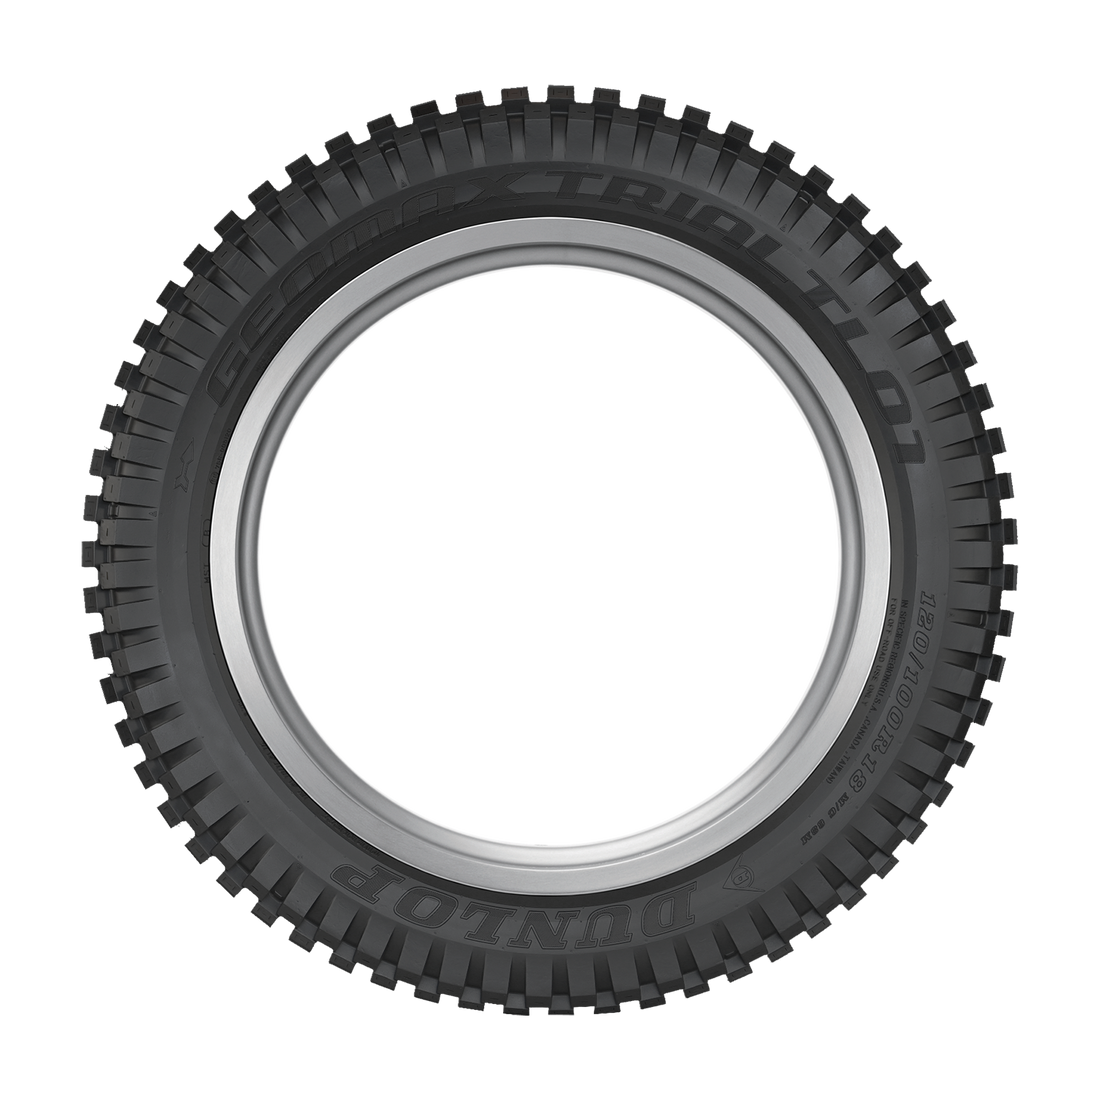 Dunlop Geomax Trials TL01 Tire